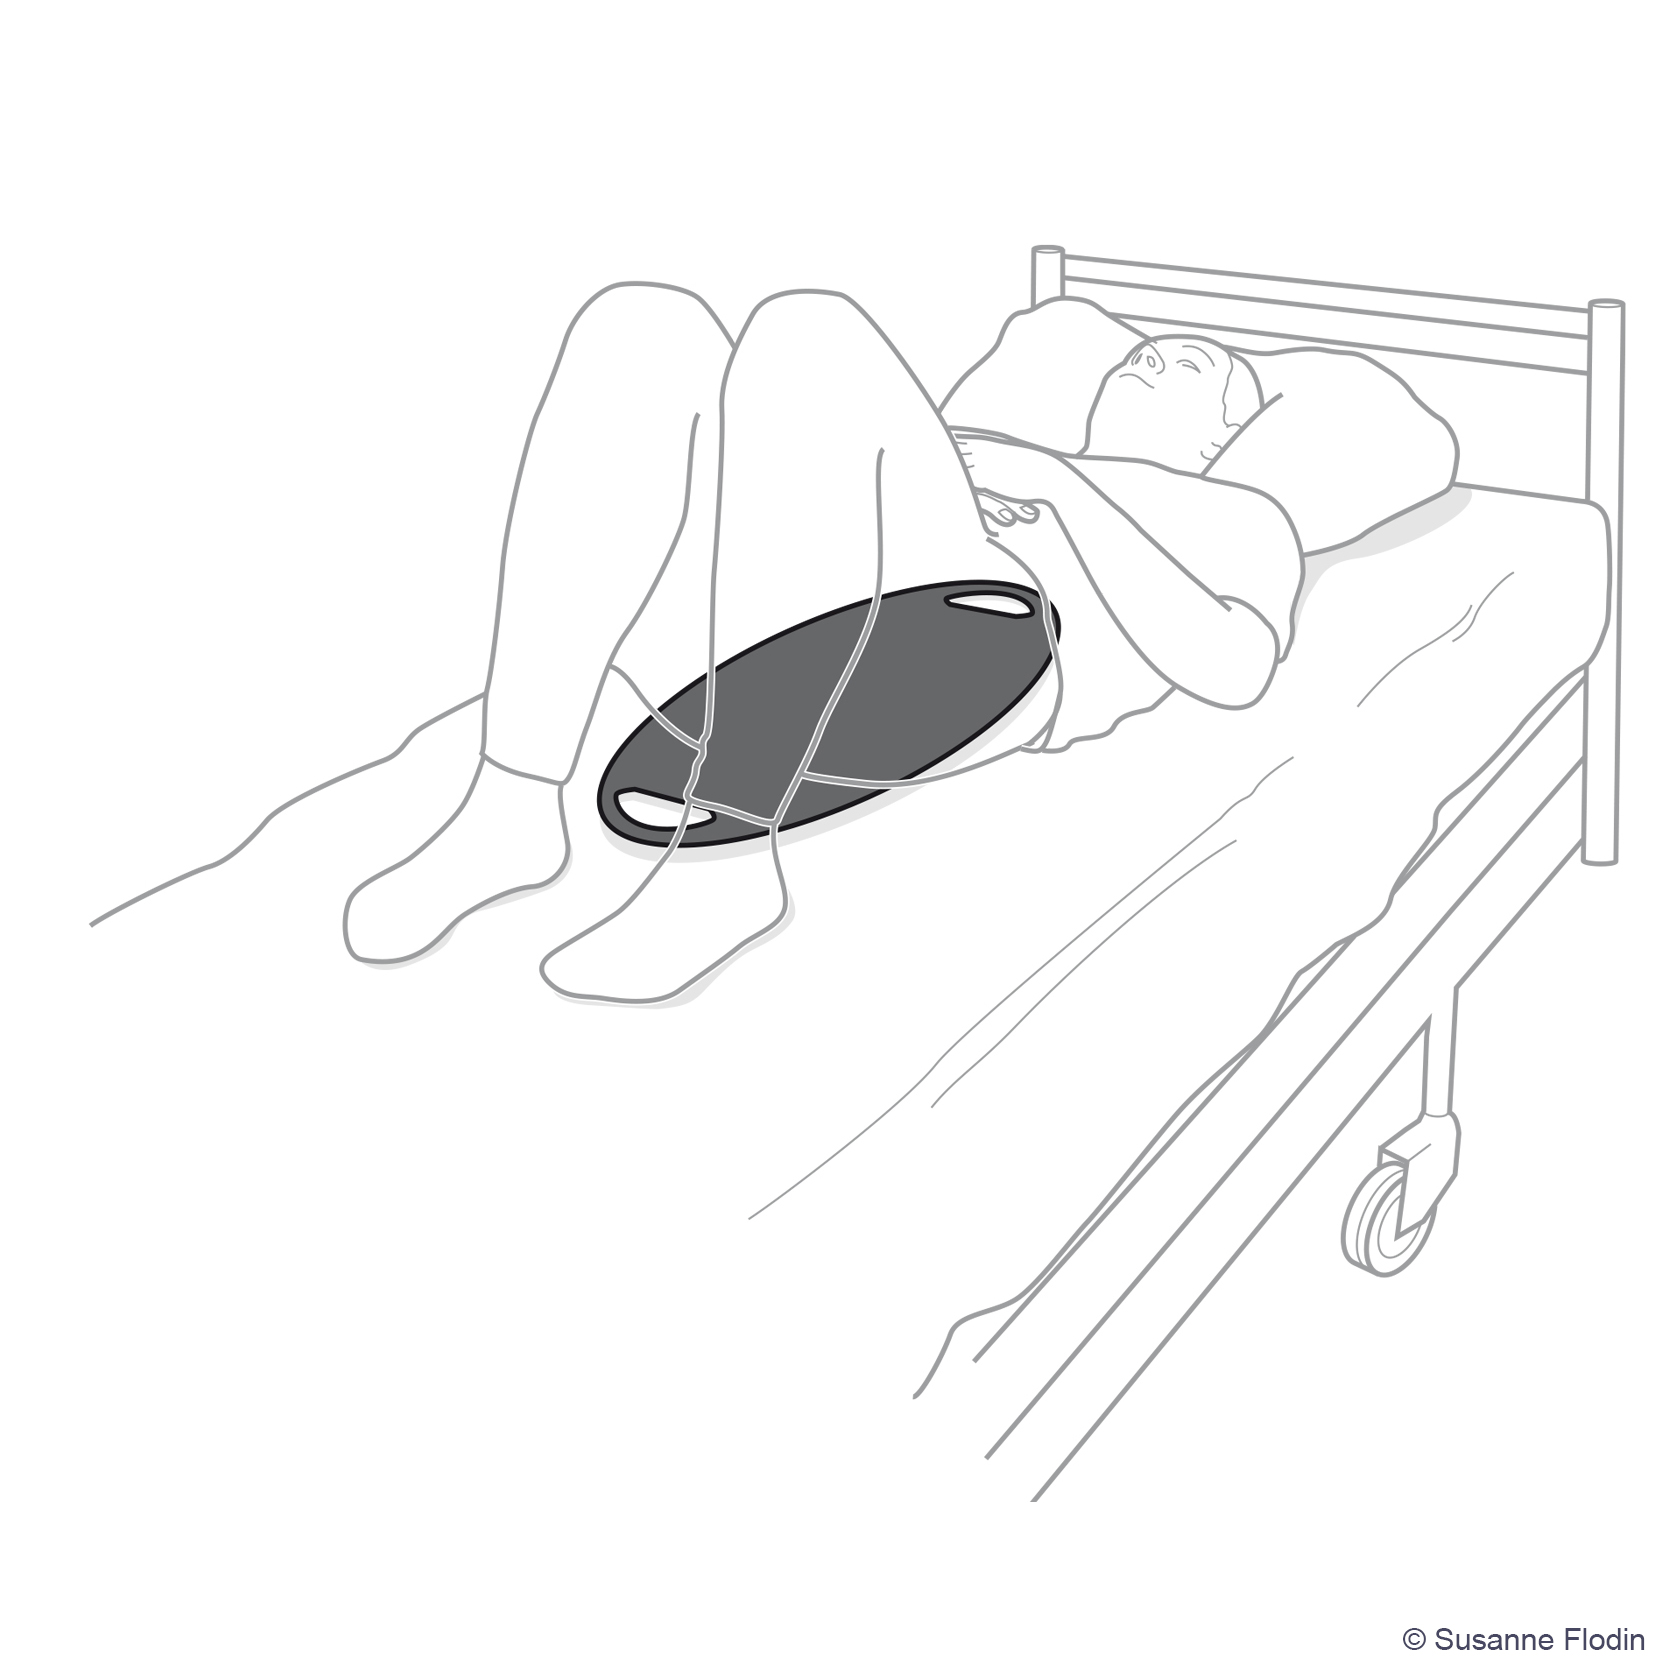 Bild som beskriver hur en glidbräda placeras under patienten i en säng. 